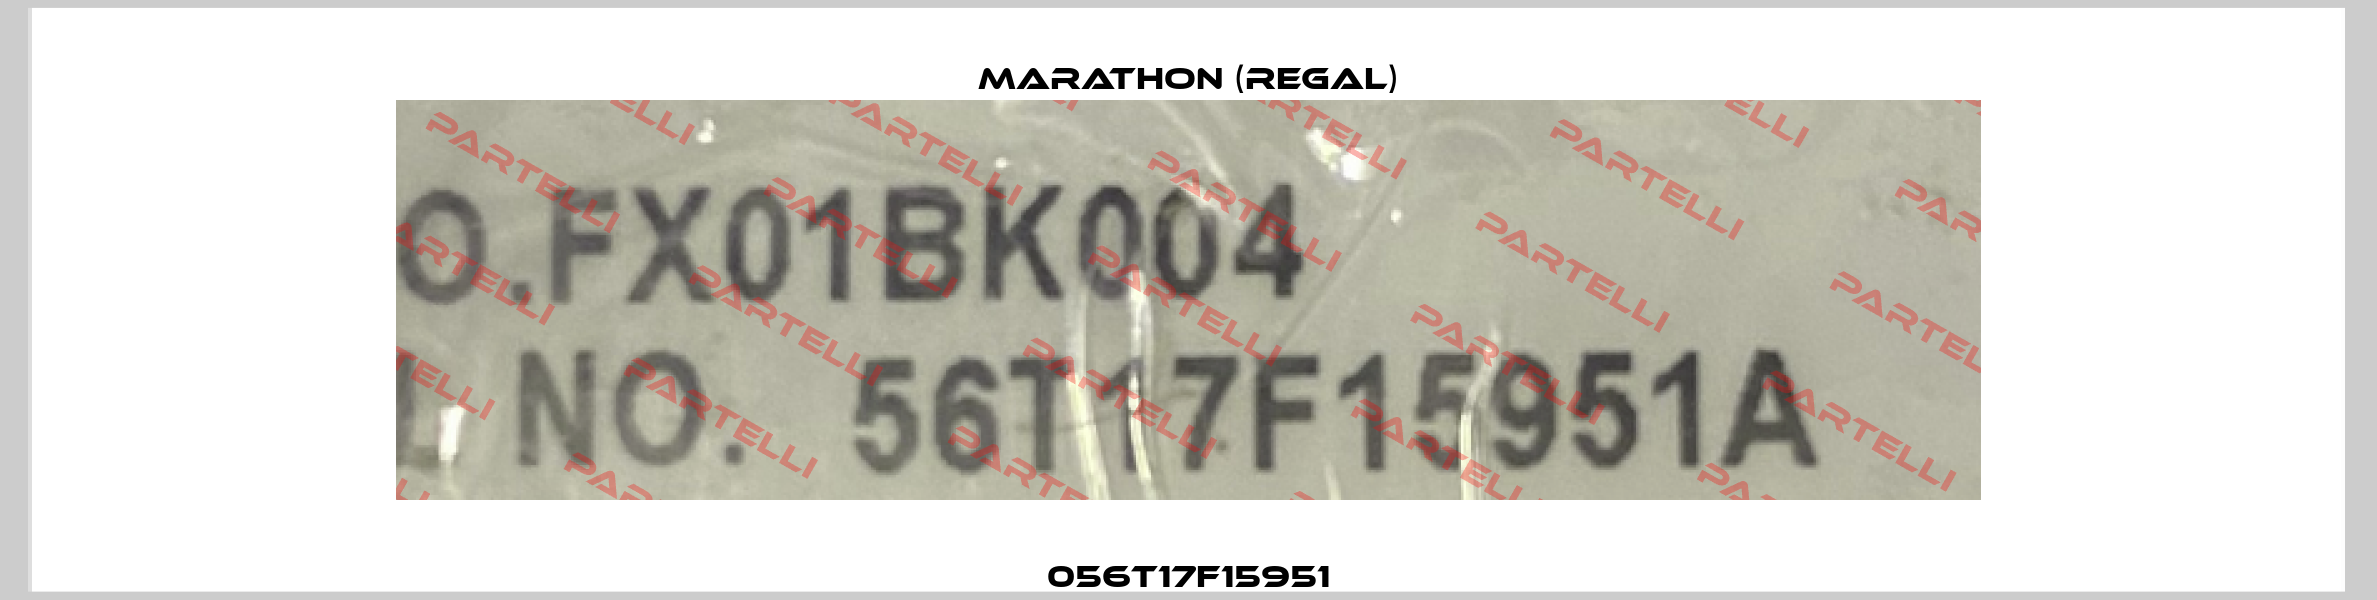 056T17F15951 Marathon (Regal)